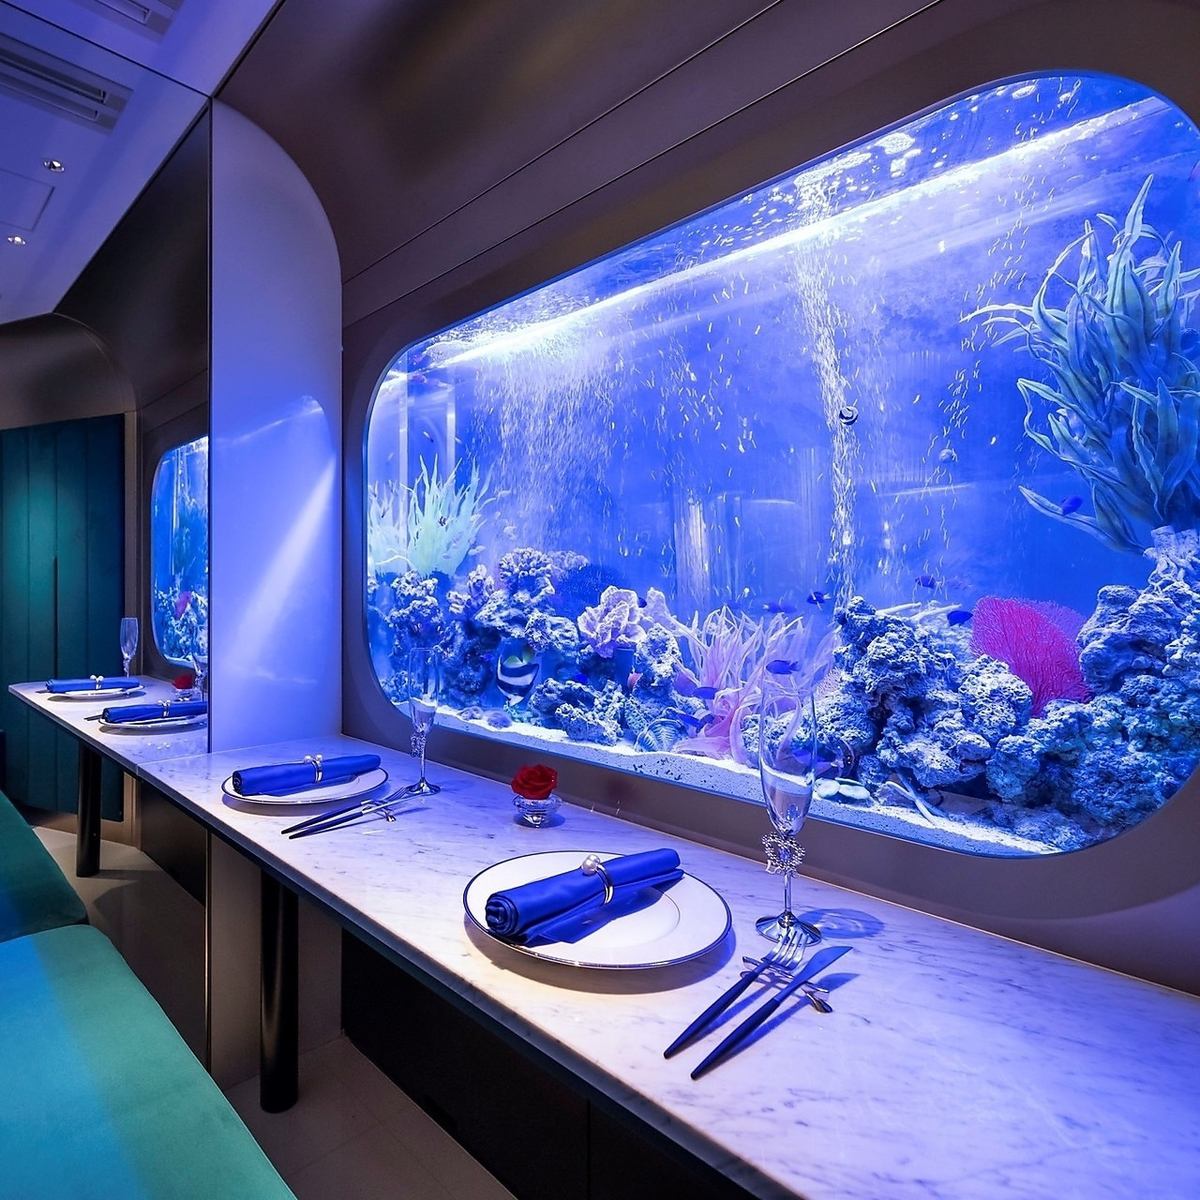 魚兒在水族館裡漂亮地洄游，營造出夢幻浪漫的空間